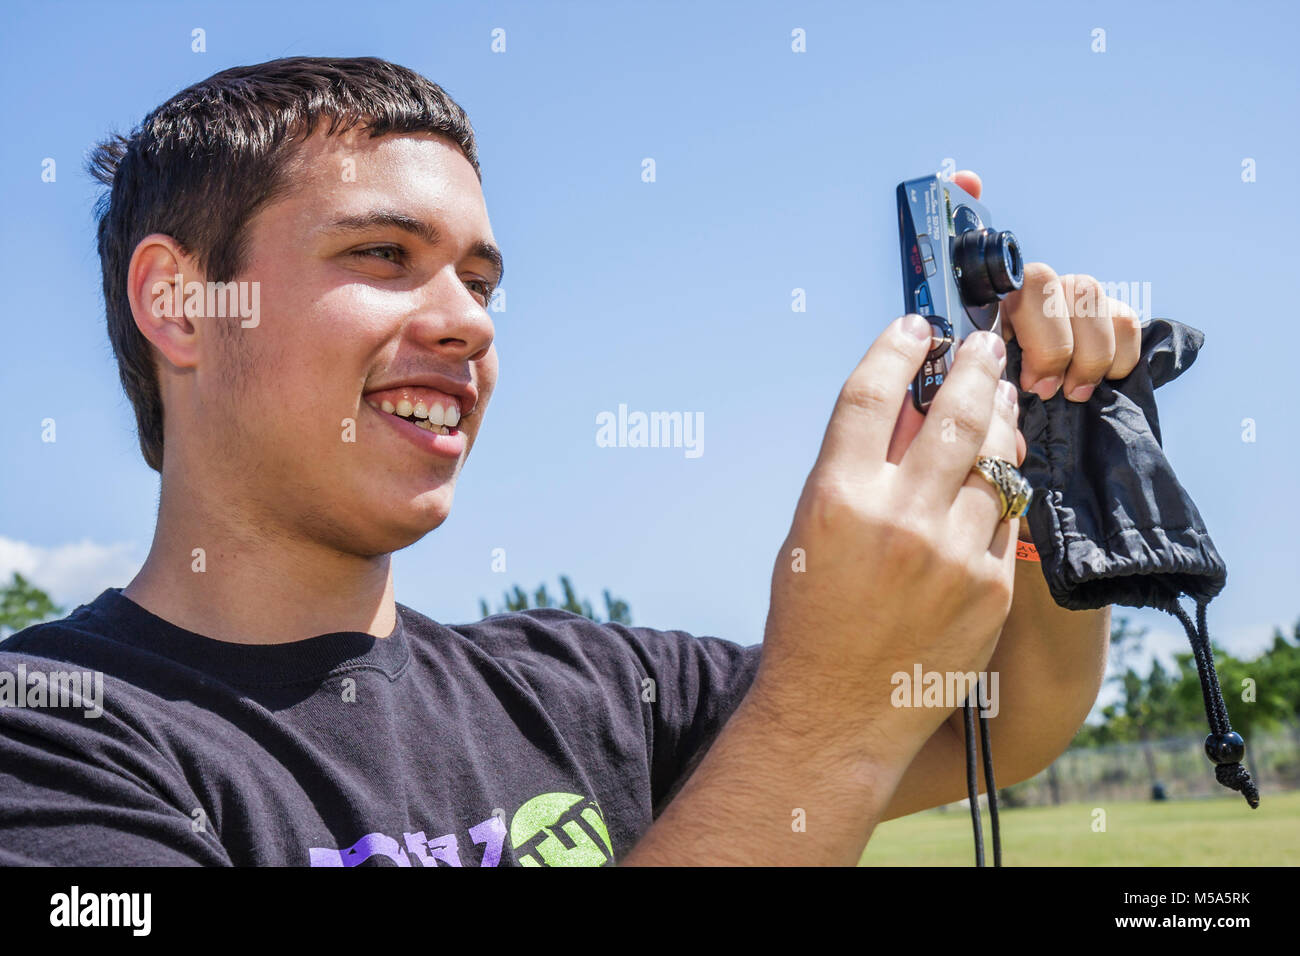 Miami Florida,Metrozoo zoo,adolescente hispano chico varón tomando foto cámara digital, Foto de stock